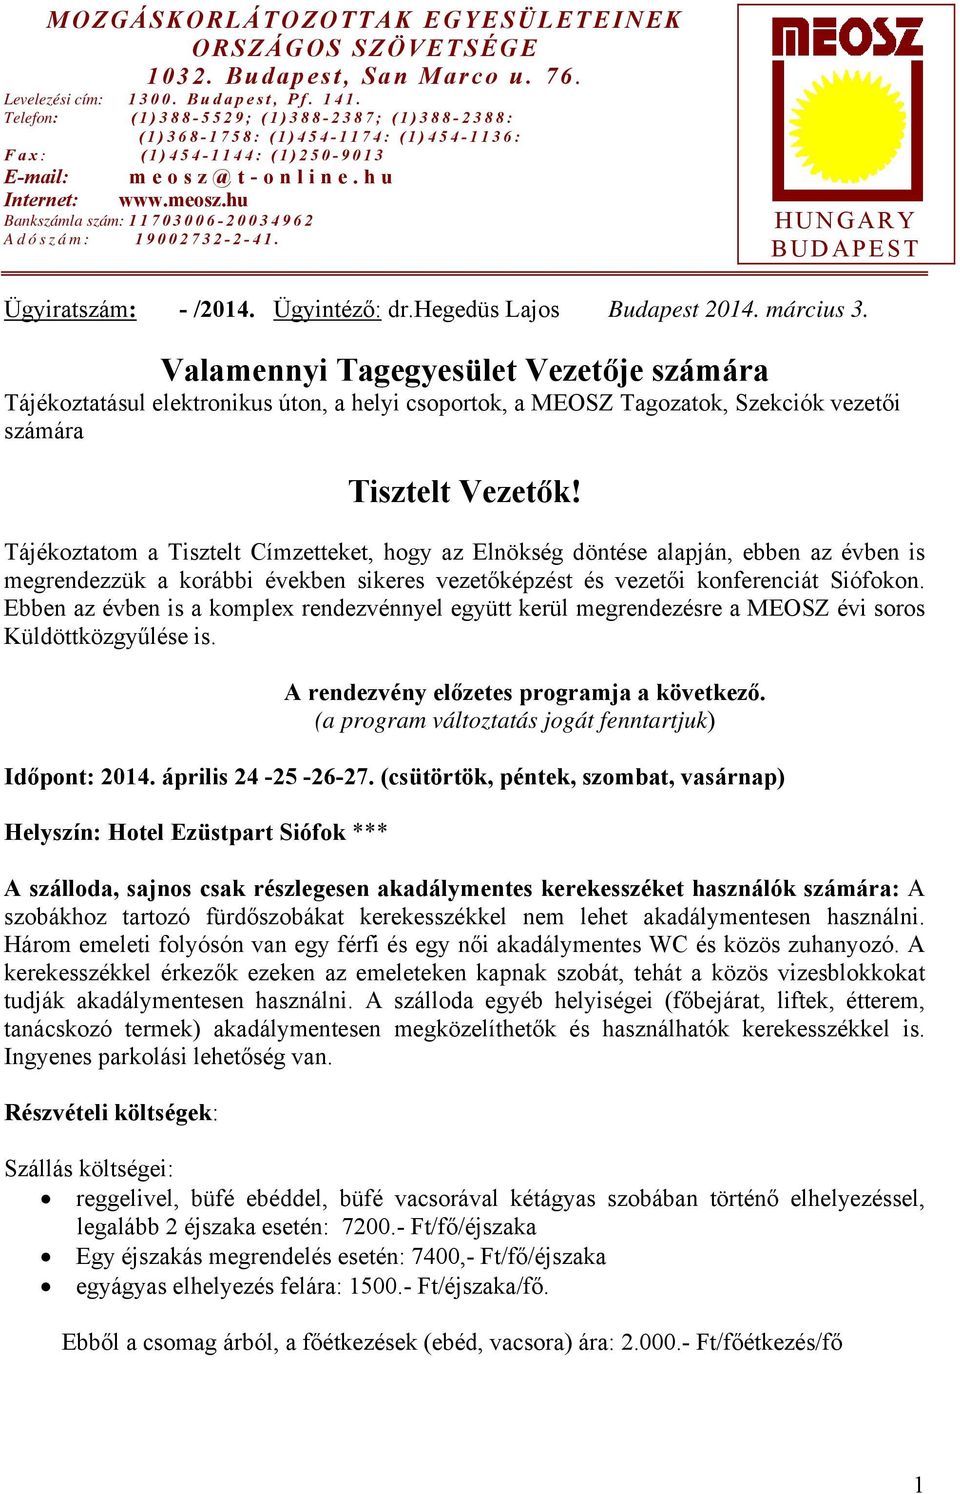 HUNGARY BUDAPEST Ügyiratszám: - /2014. Ügyintéző: dr.hegedüs Lajos Budapest 2014. március 3.